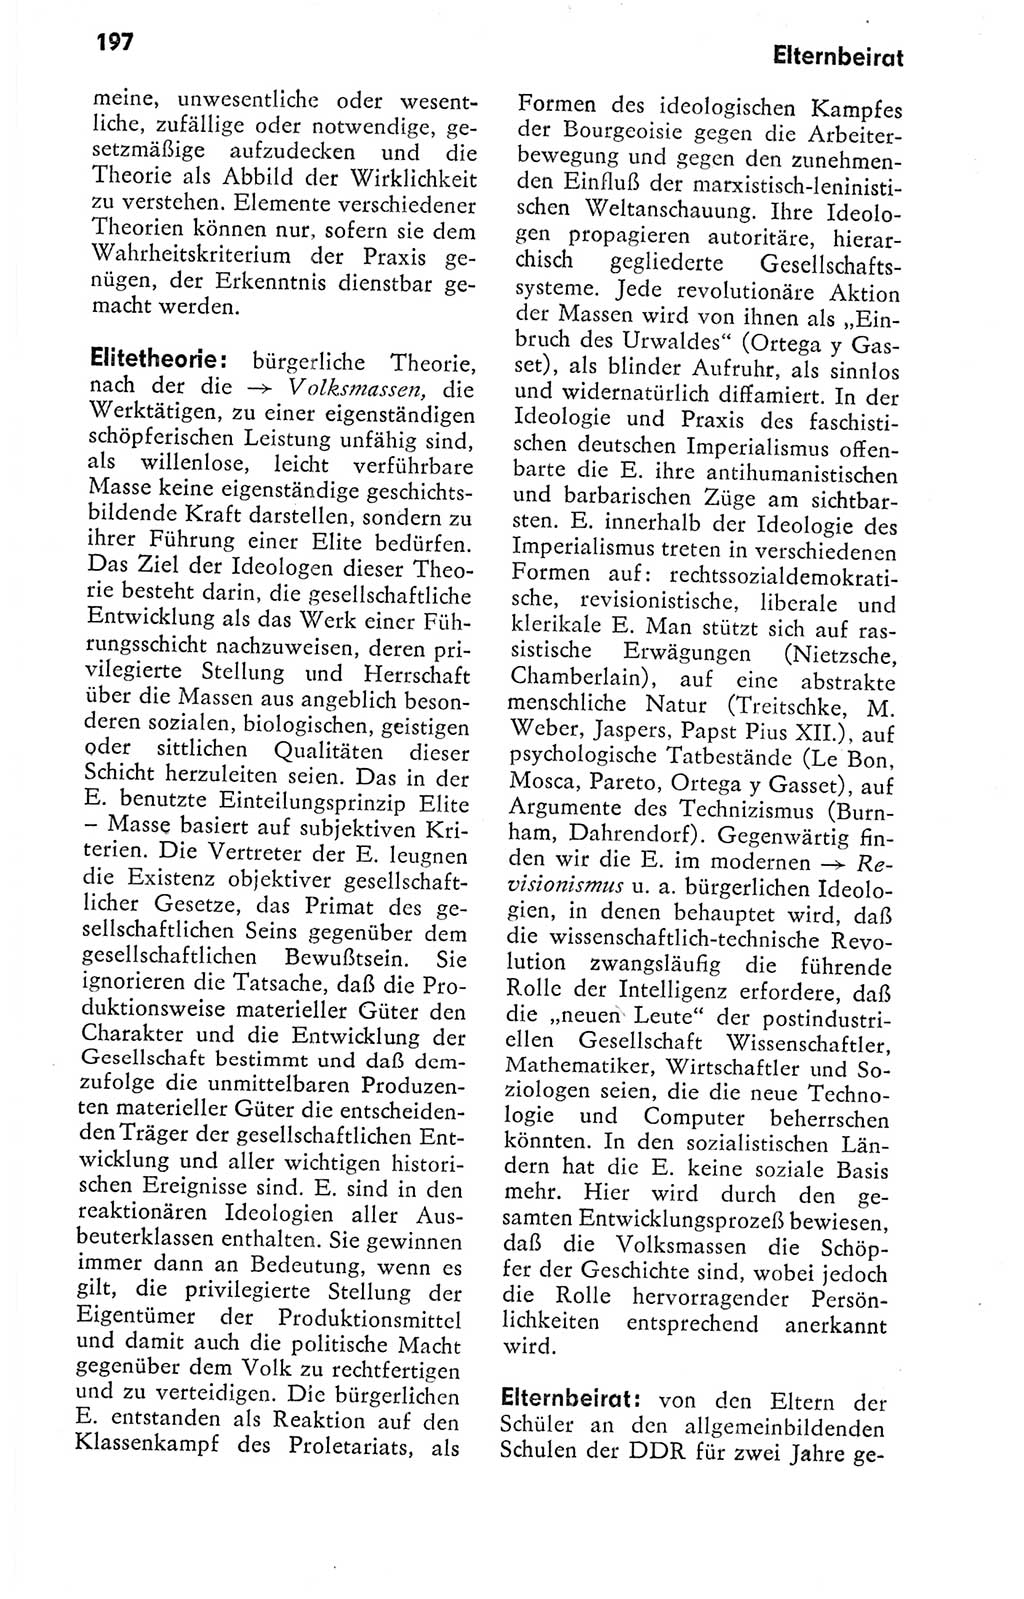 Kleines politisches Wörterbuch [Deutsche Demokratische Republik (DDR)] 1978, Seite 197 (Kl. pol. Wb. DDR 1978, S. 197)